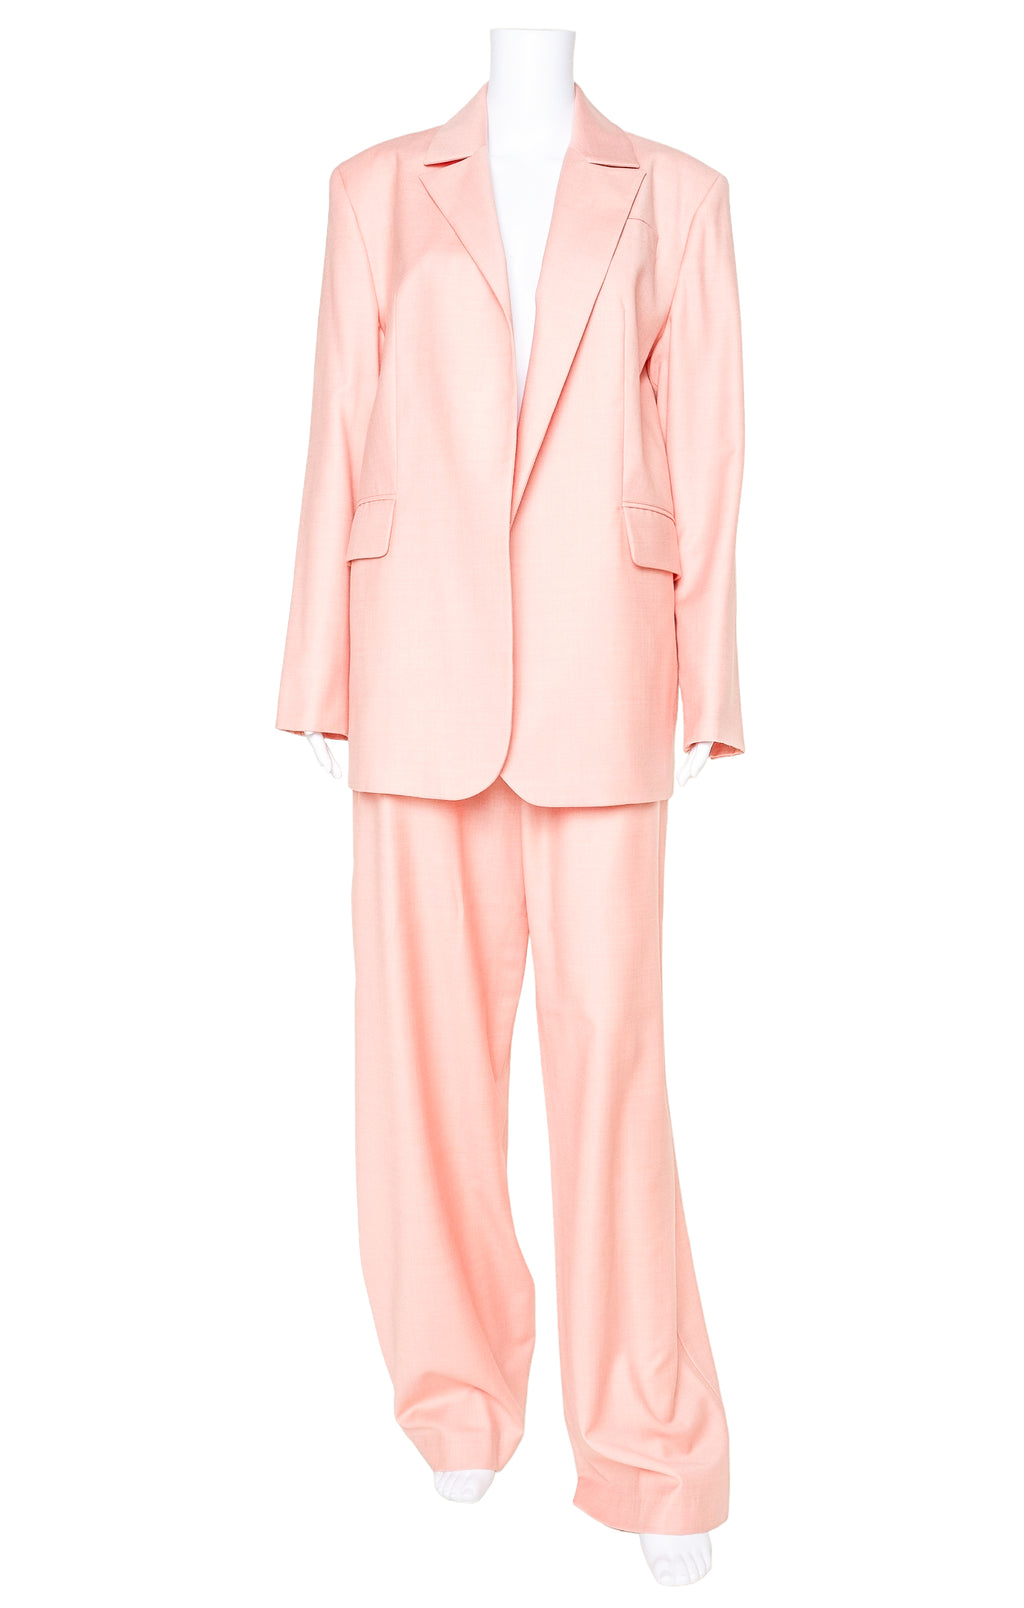 MATÉRIEL TBILISI (RARE) Suit Size: Jacket - M Pants - L